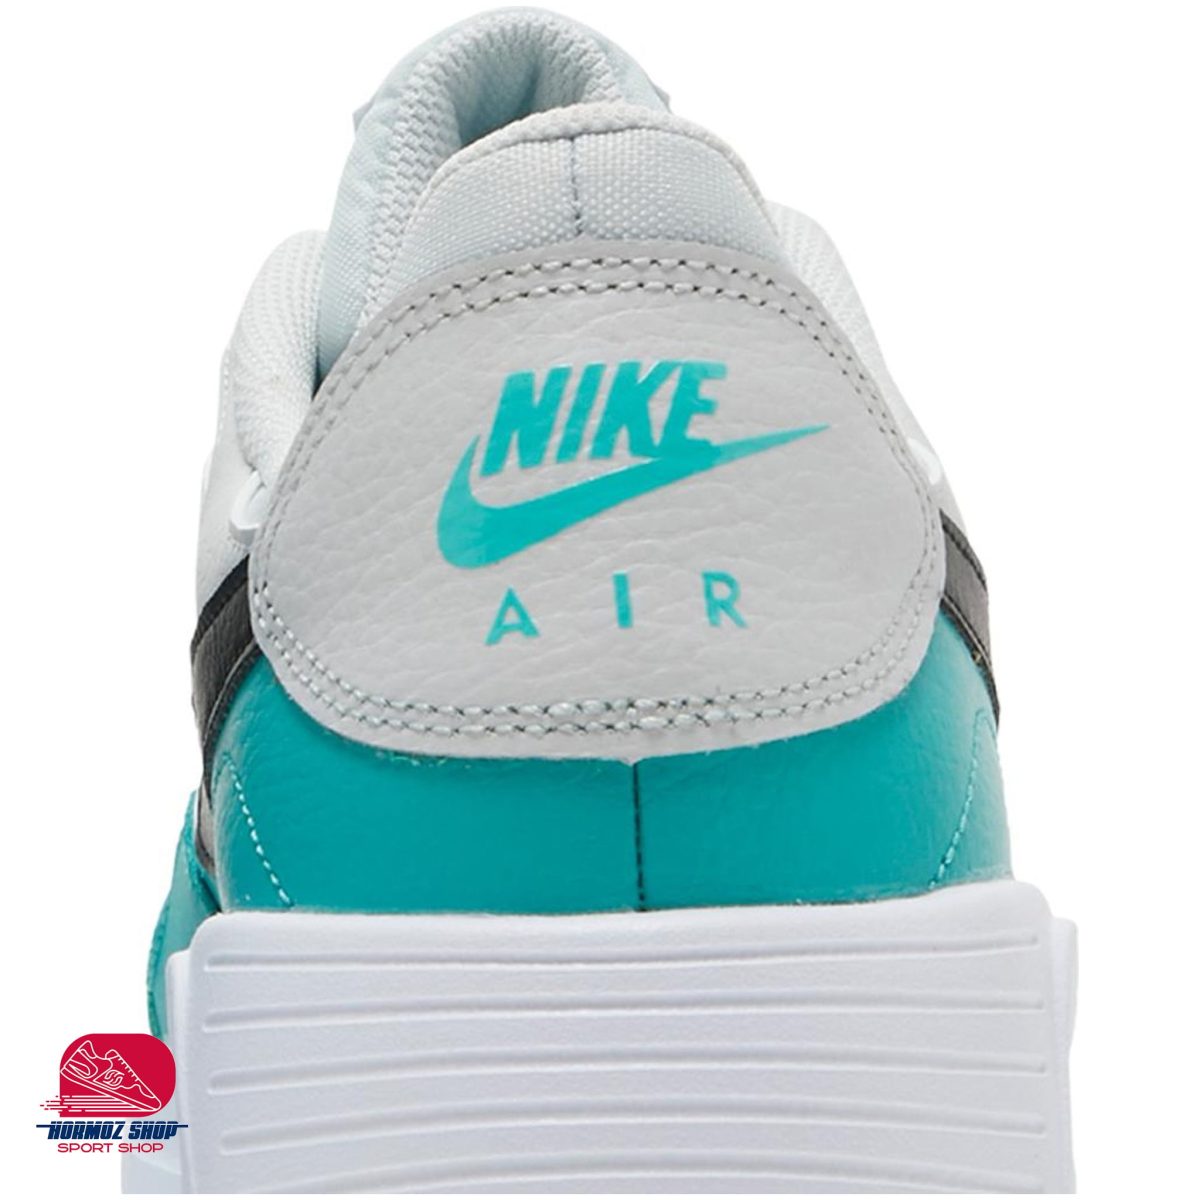 Nike cw4555 008 7